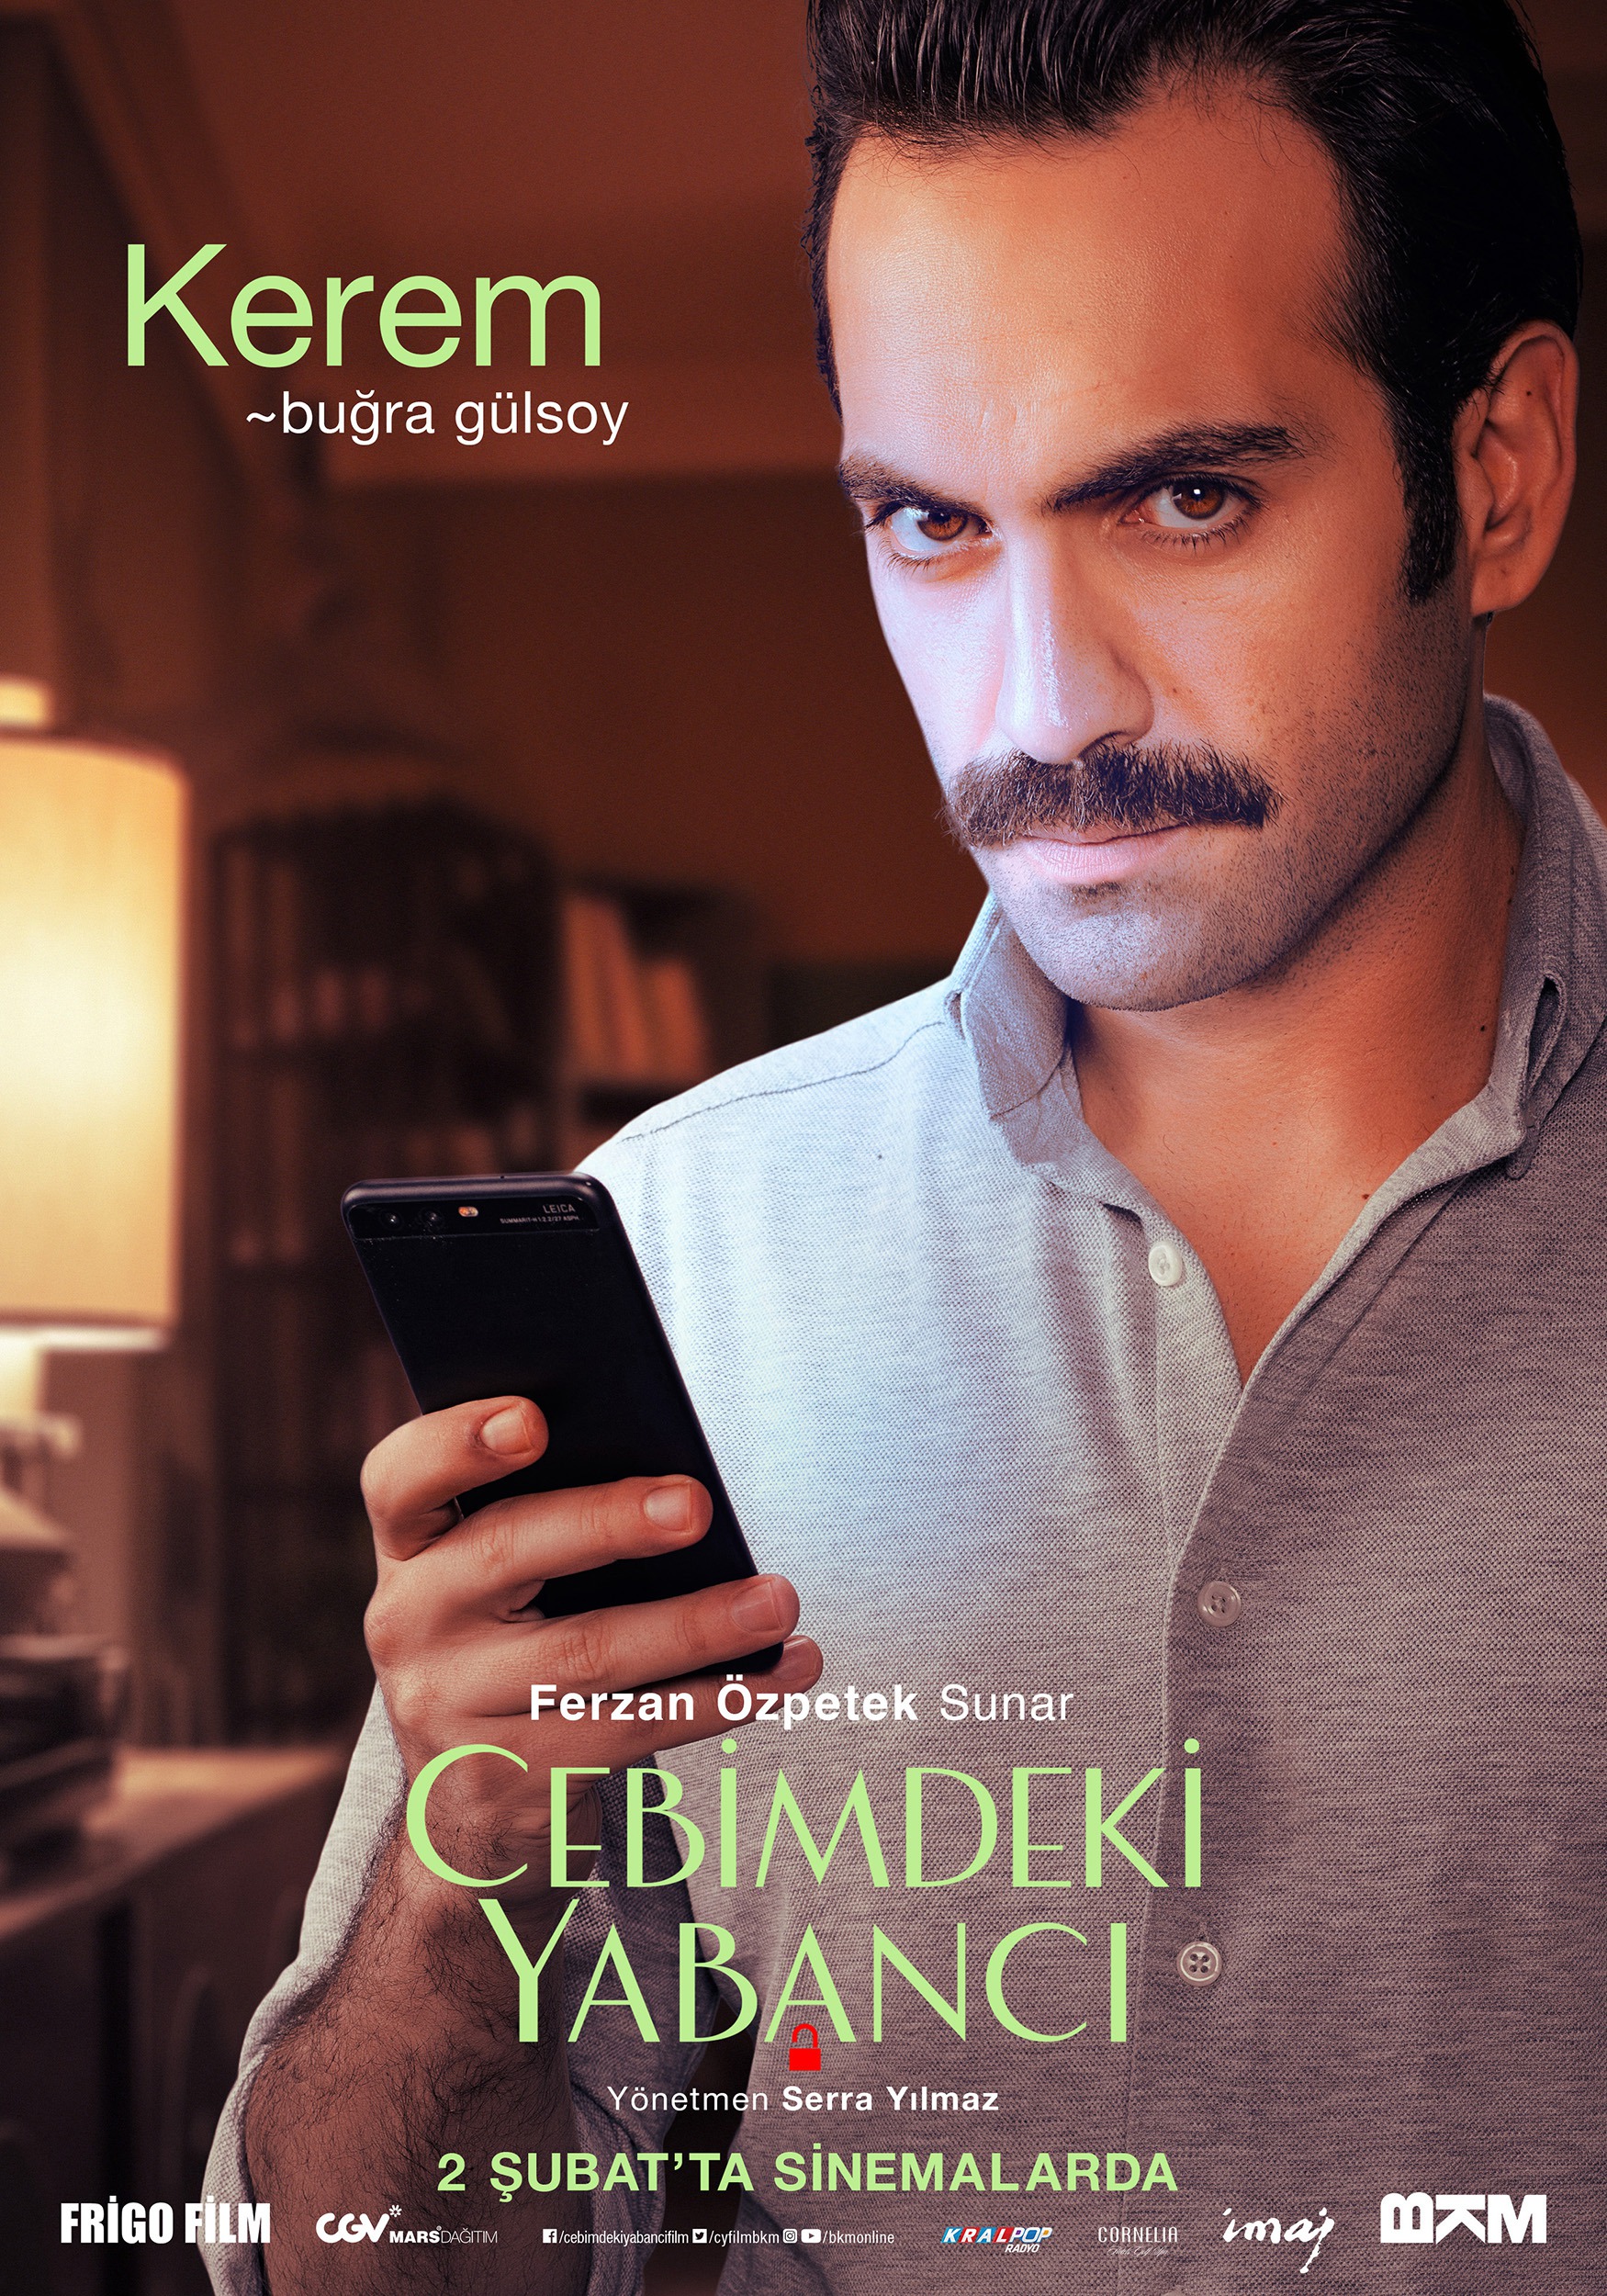 Mega Sized Movie Poster Image for Cebimdeki Yabancı (#7 of 10)